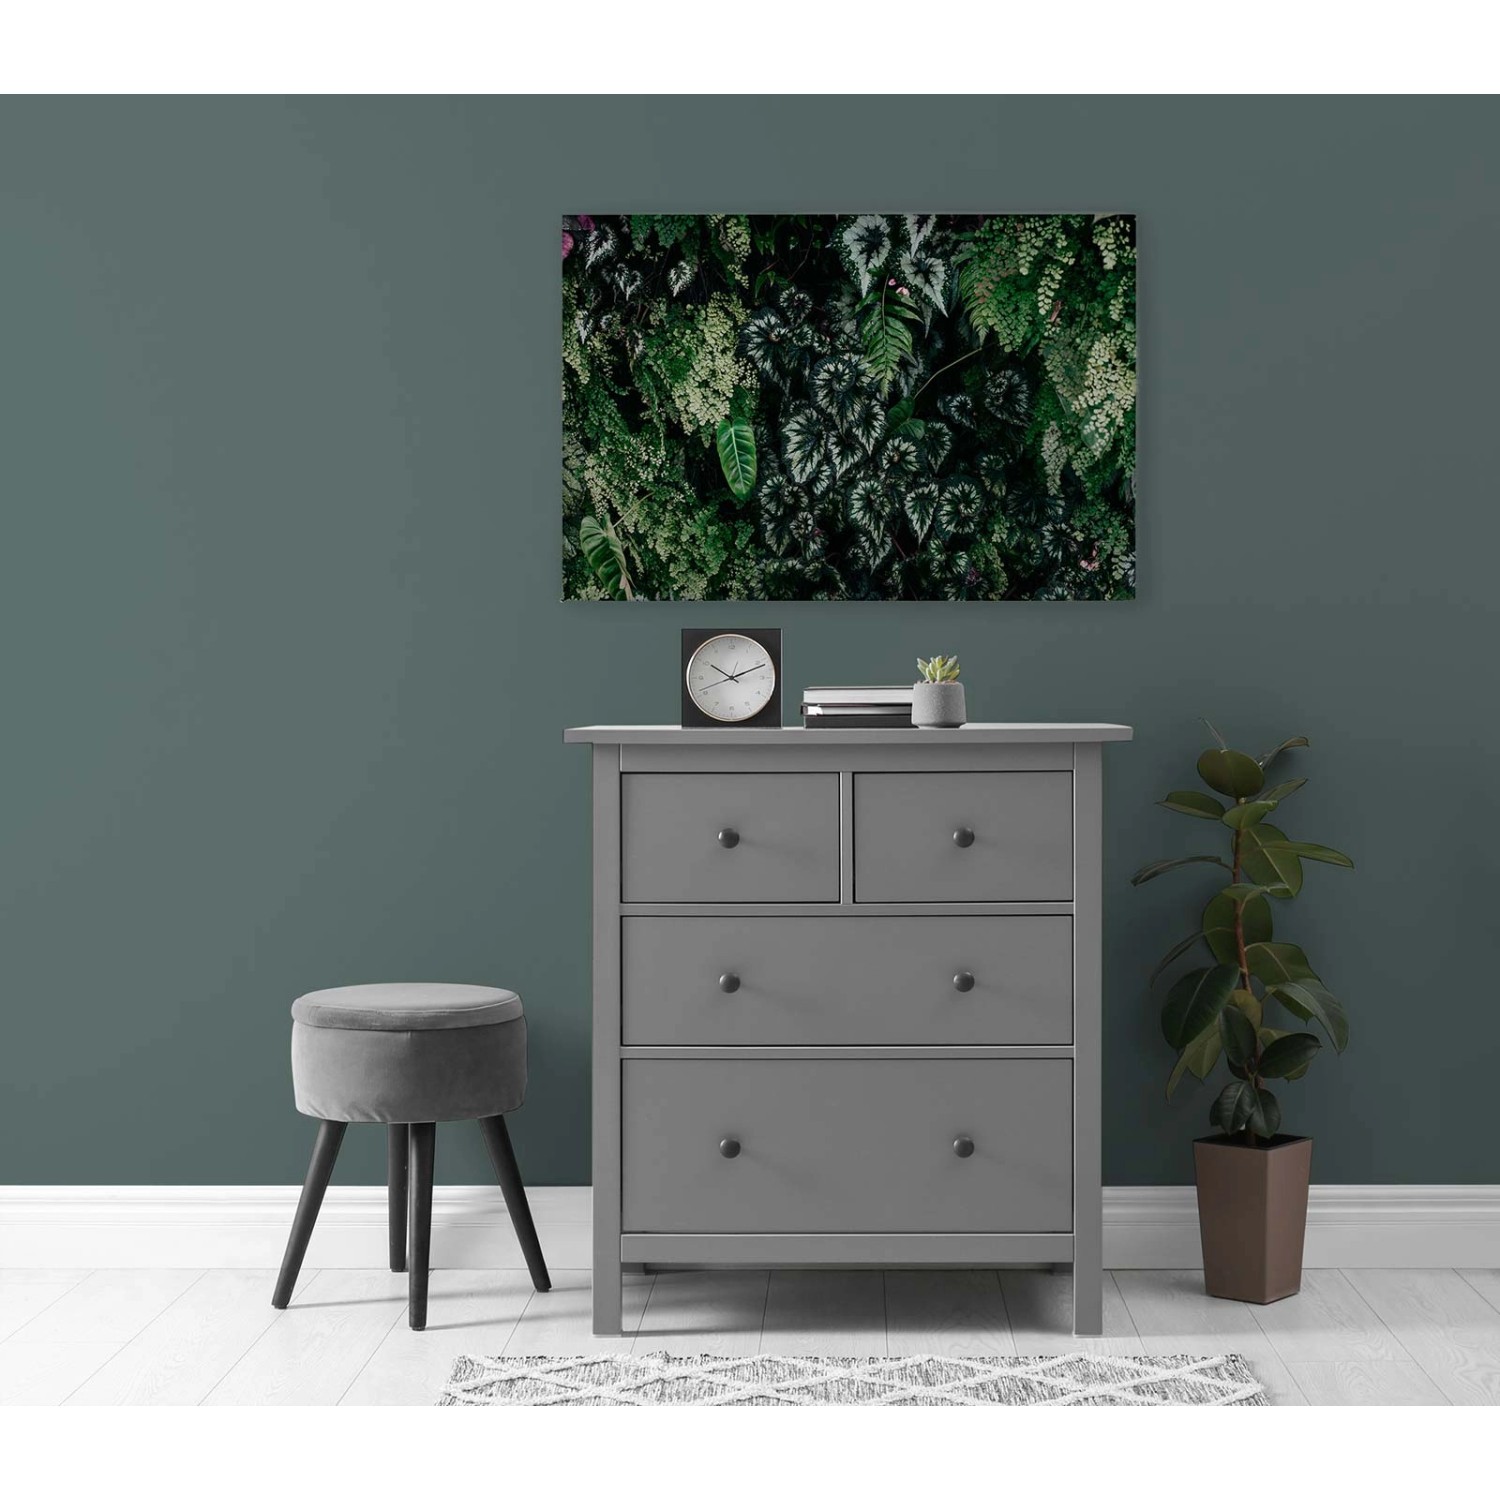 Bricoflor Bild Auf Leinwand Blätter Motiv Dunkelgrün Dschungel Wandbild 90 X 60 Cm Für Wohnzimmer Und Küche Leinwandbild